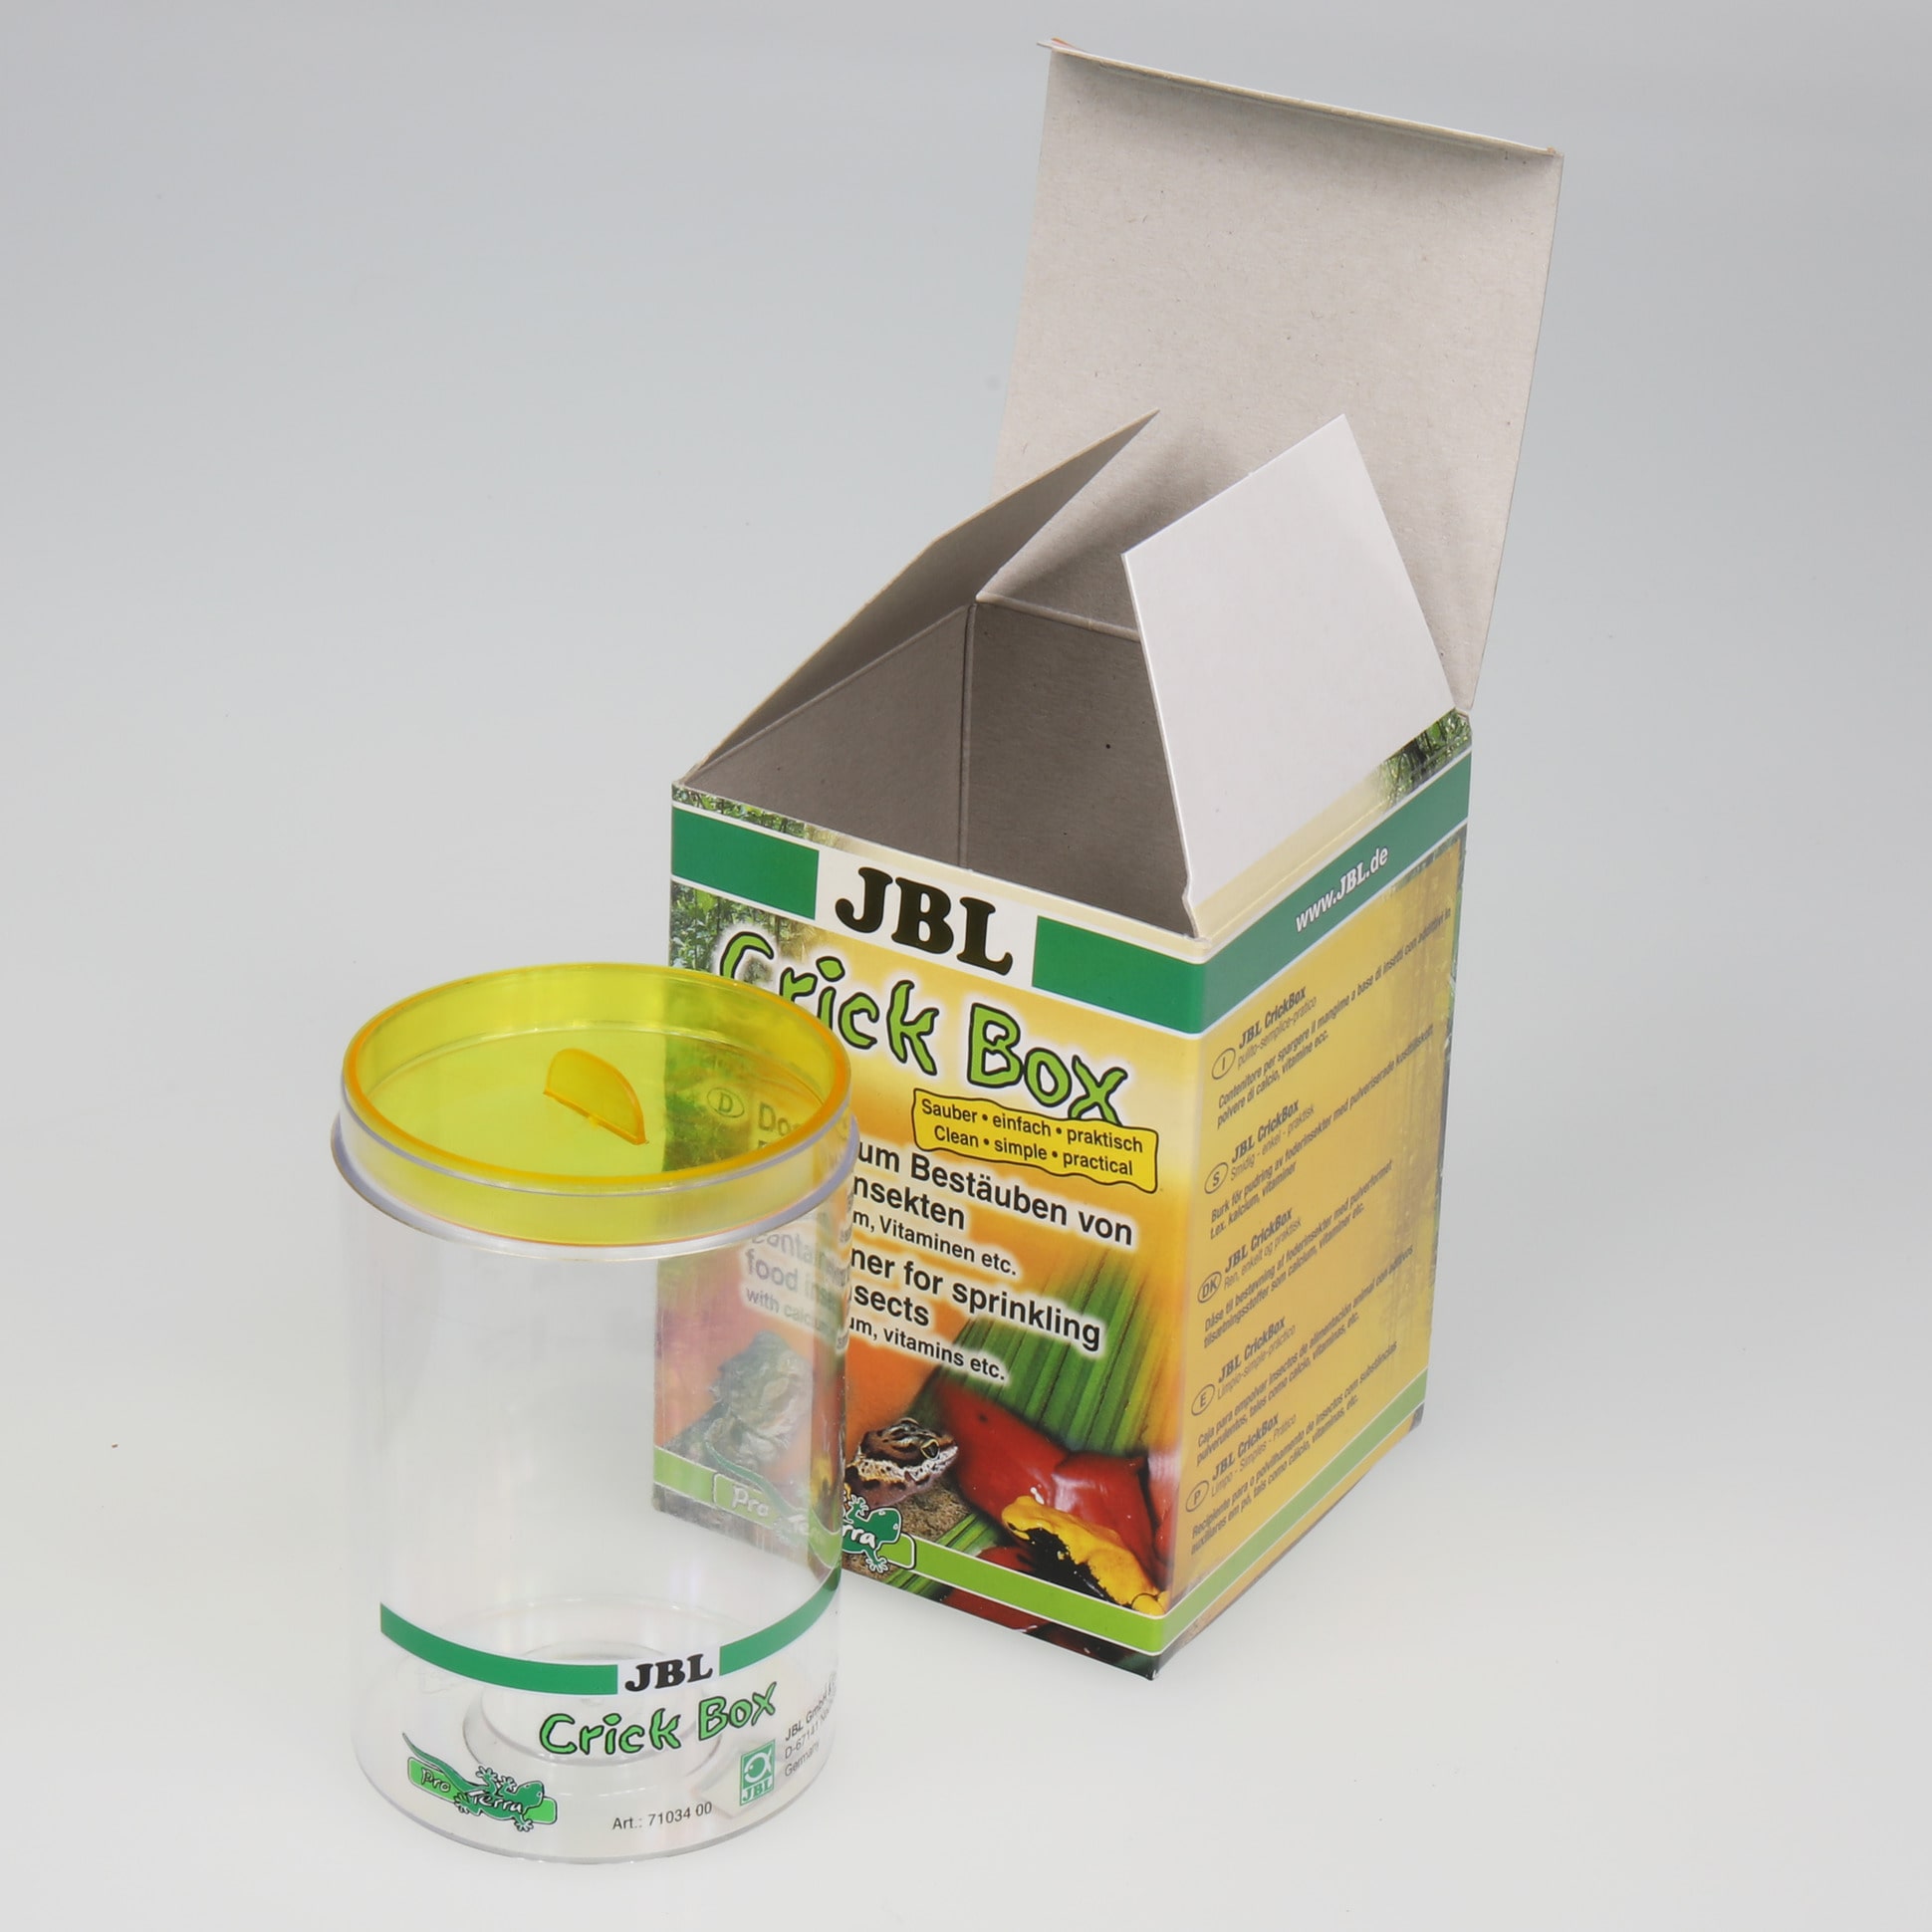 jbl-crickbox-boite-saupoudreuse-pour-enrichir-les-aliments-a-base-d-insectes-4-min